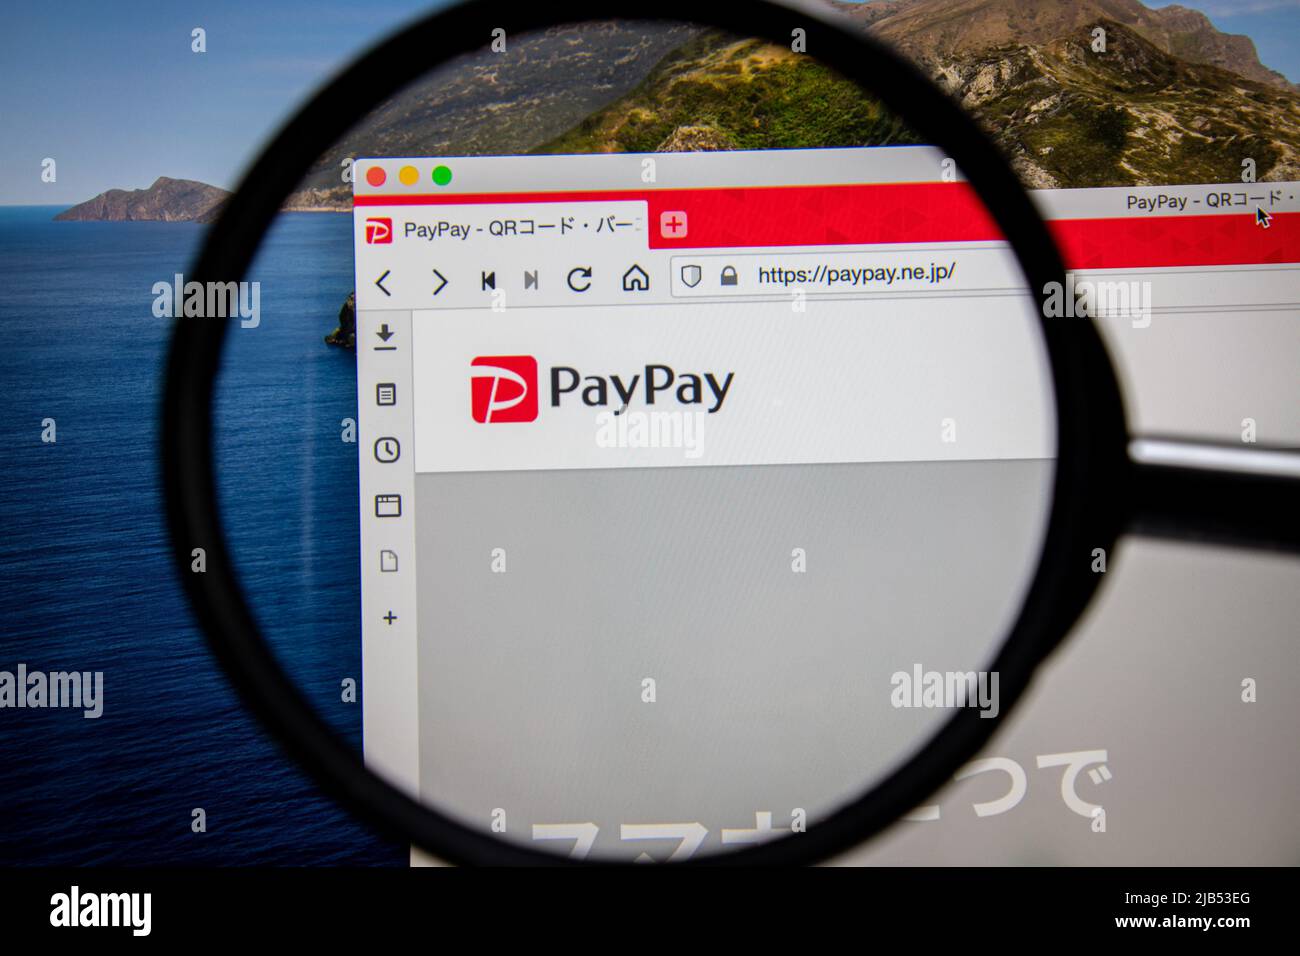 Gros plan sur le logo PayPay de l'ordinateur portable sous la loupe. Paypay est une coentreprise établie par SoftBank Corp. Et Yahoo Japan Corporation. Banque D'Images